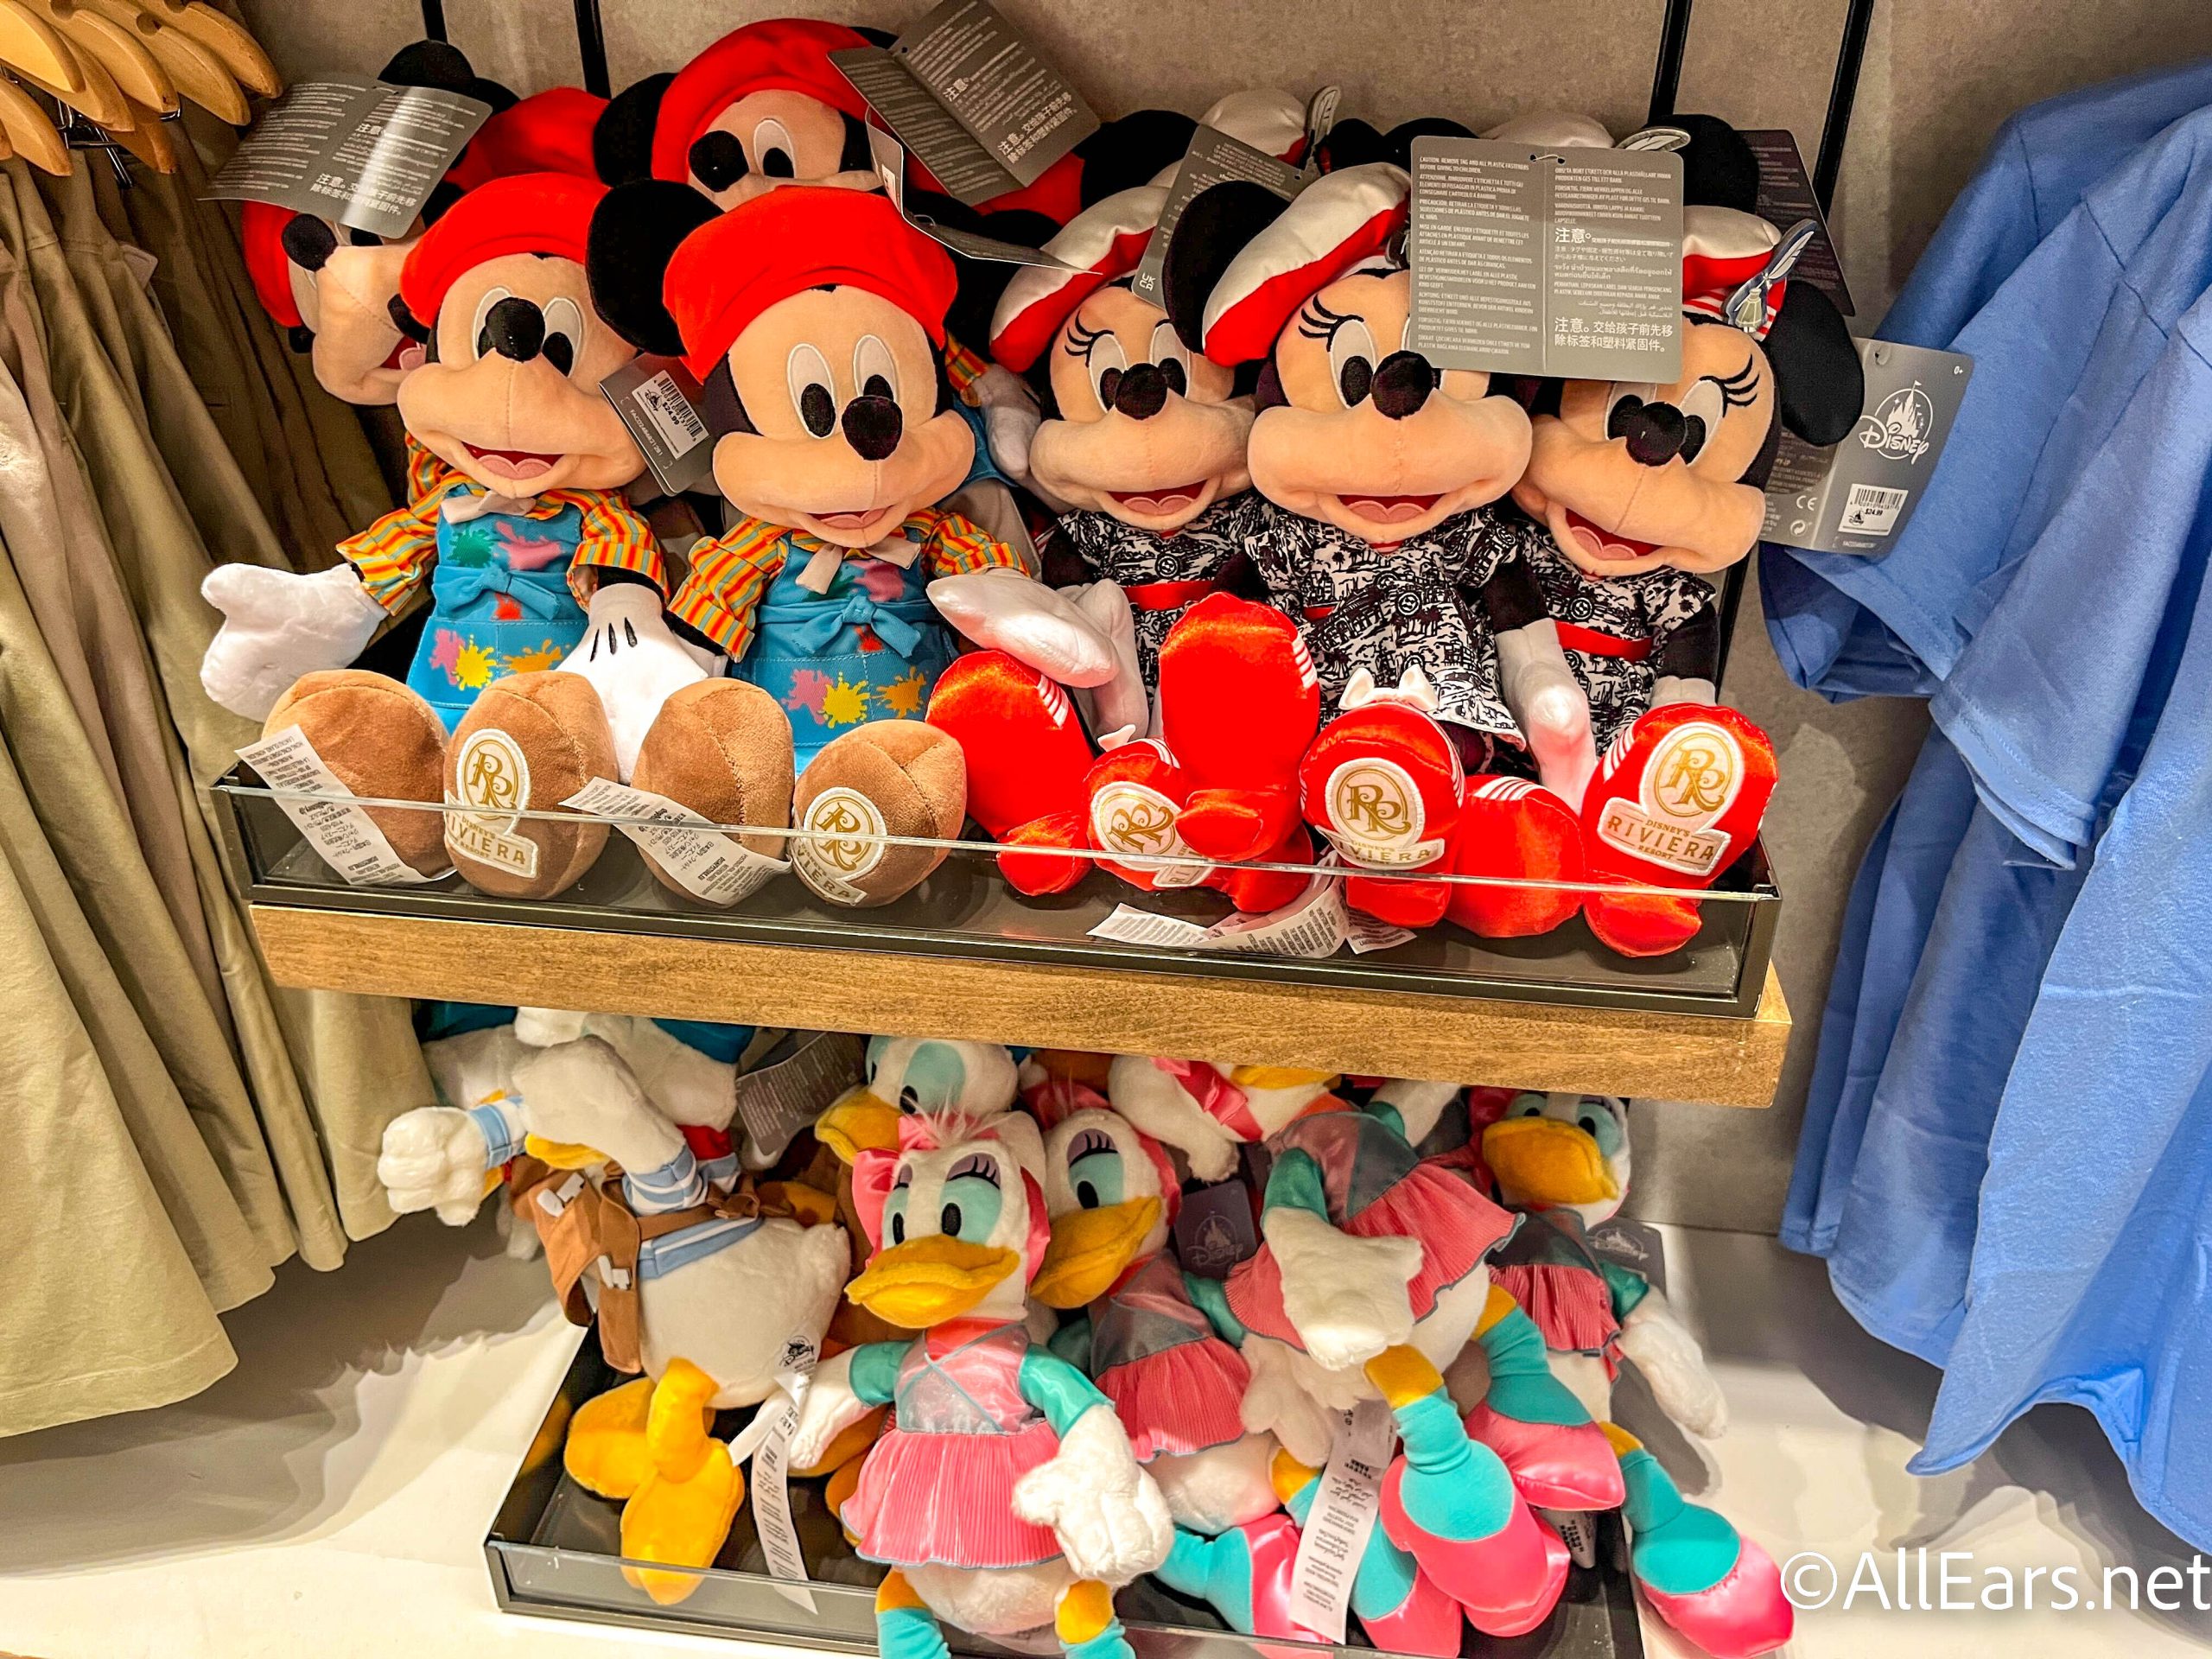 La Boutique de Minnie - Série Disney Television Animation